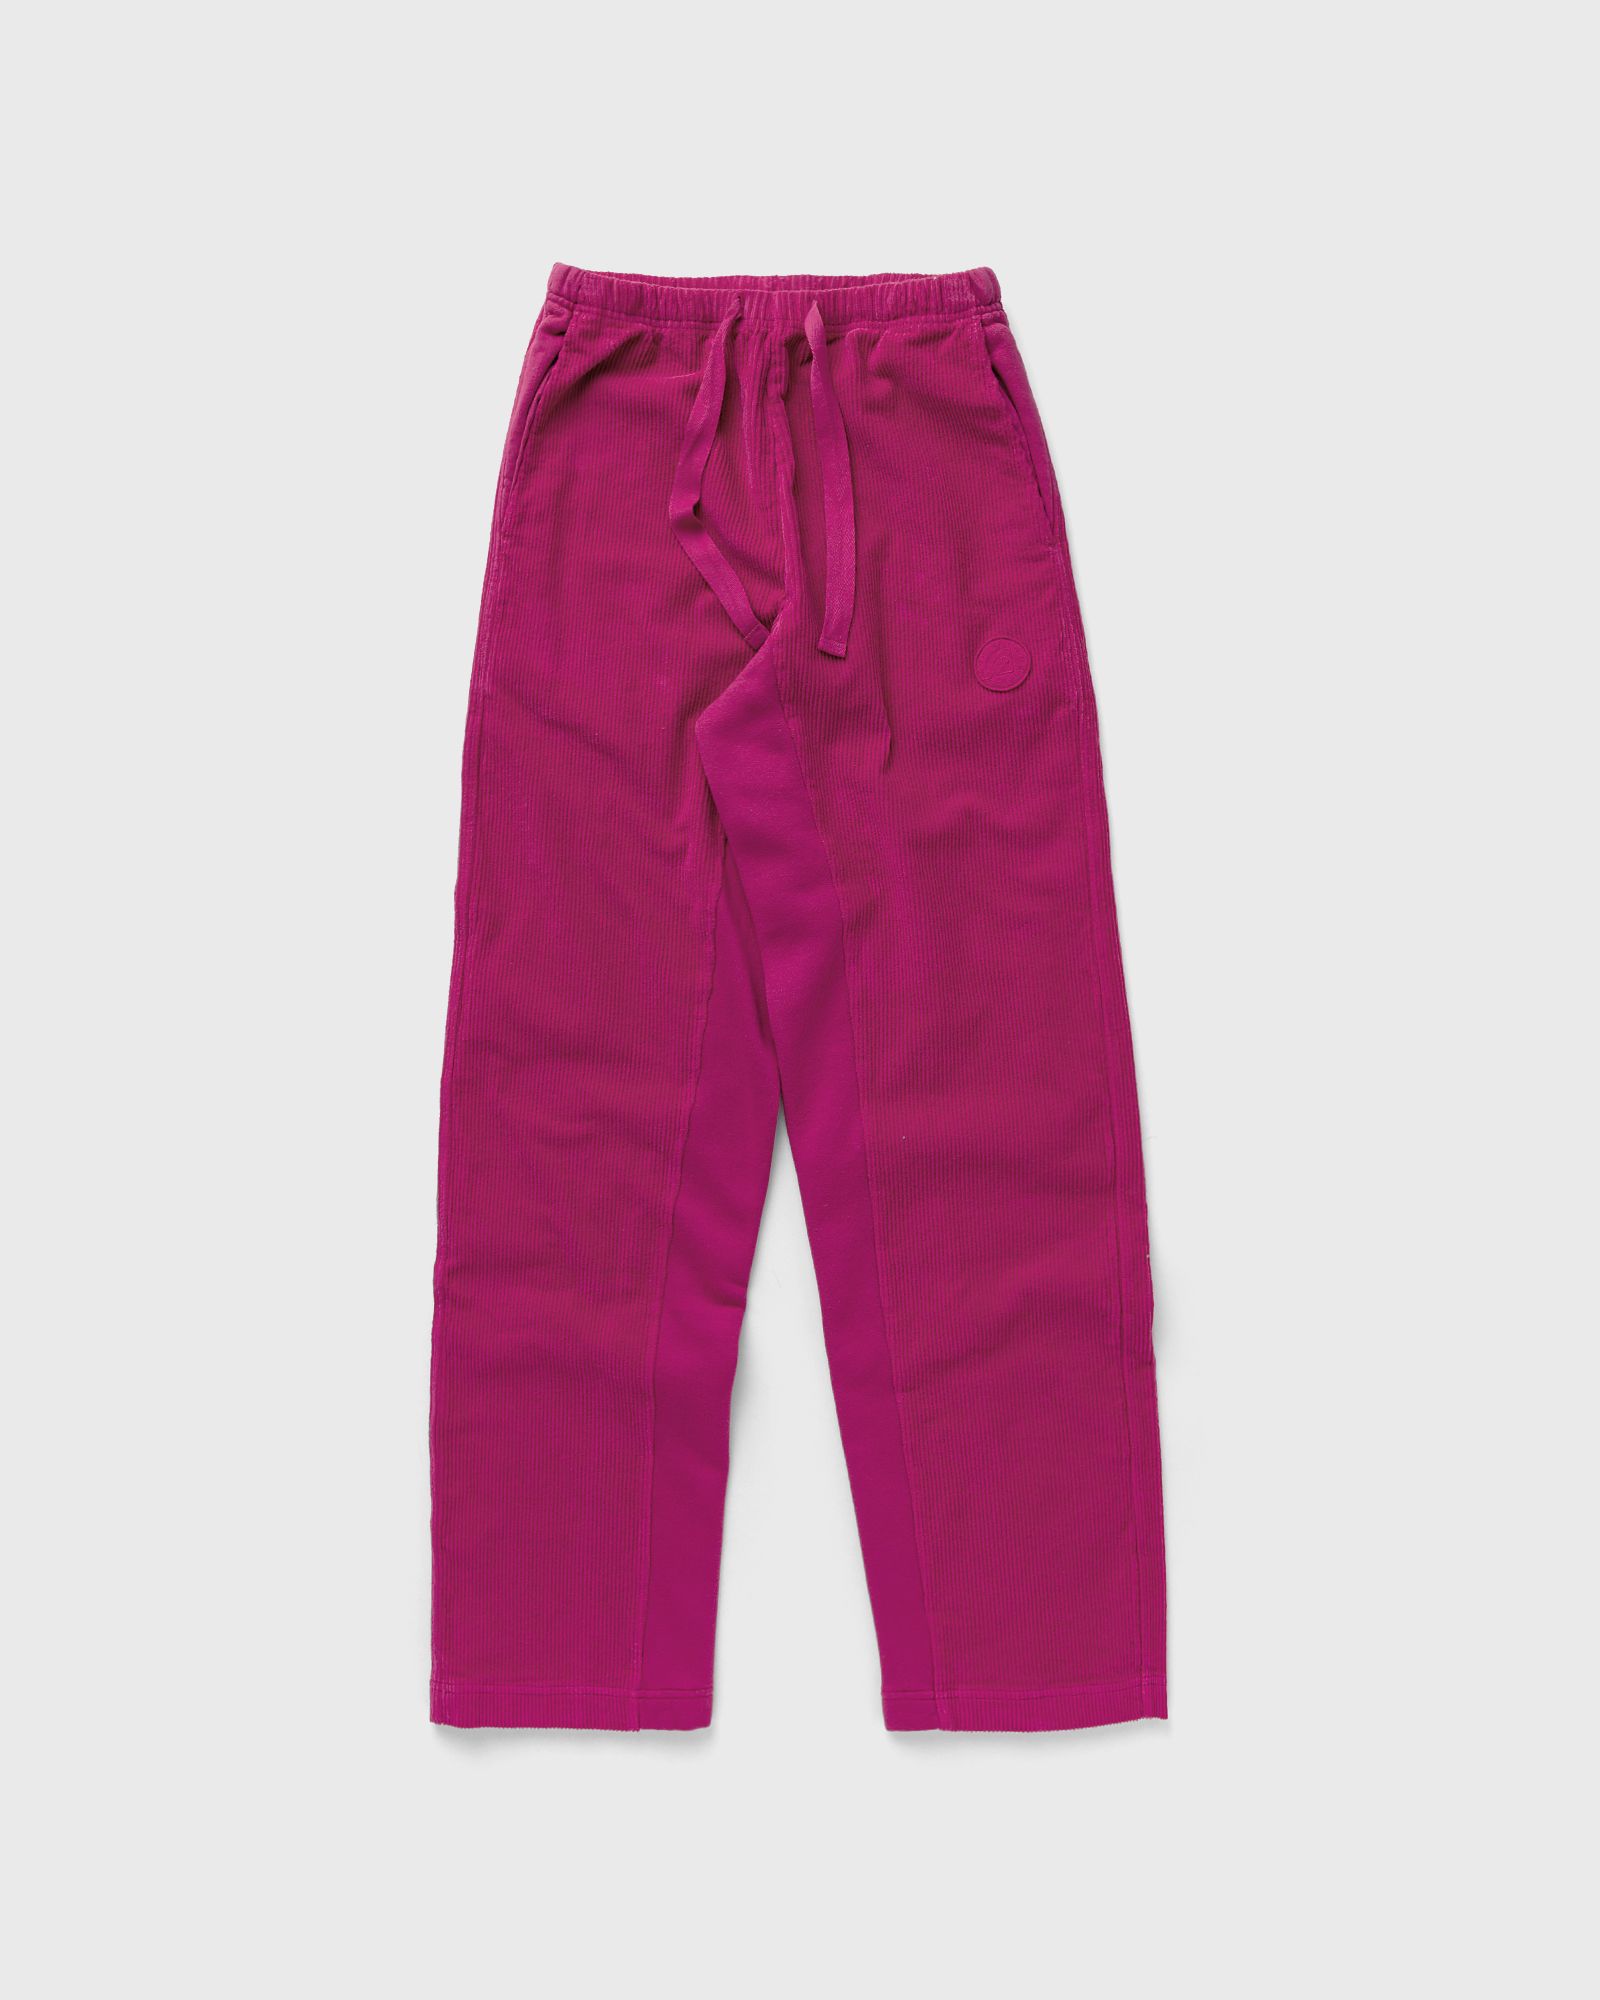 Autry Action Shoes - wmns pants velvet women sweatpants pink in größe:l